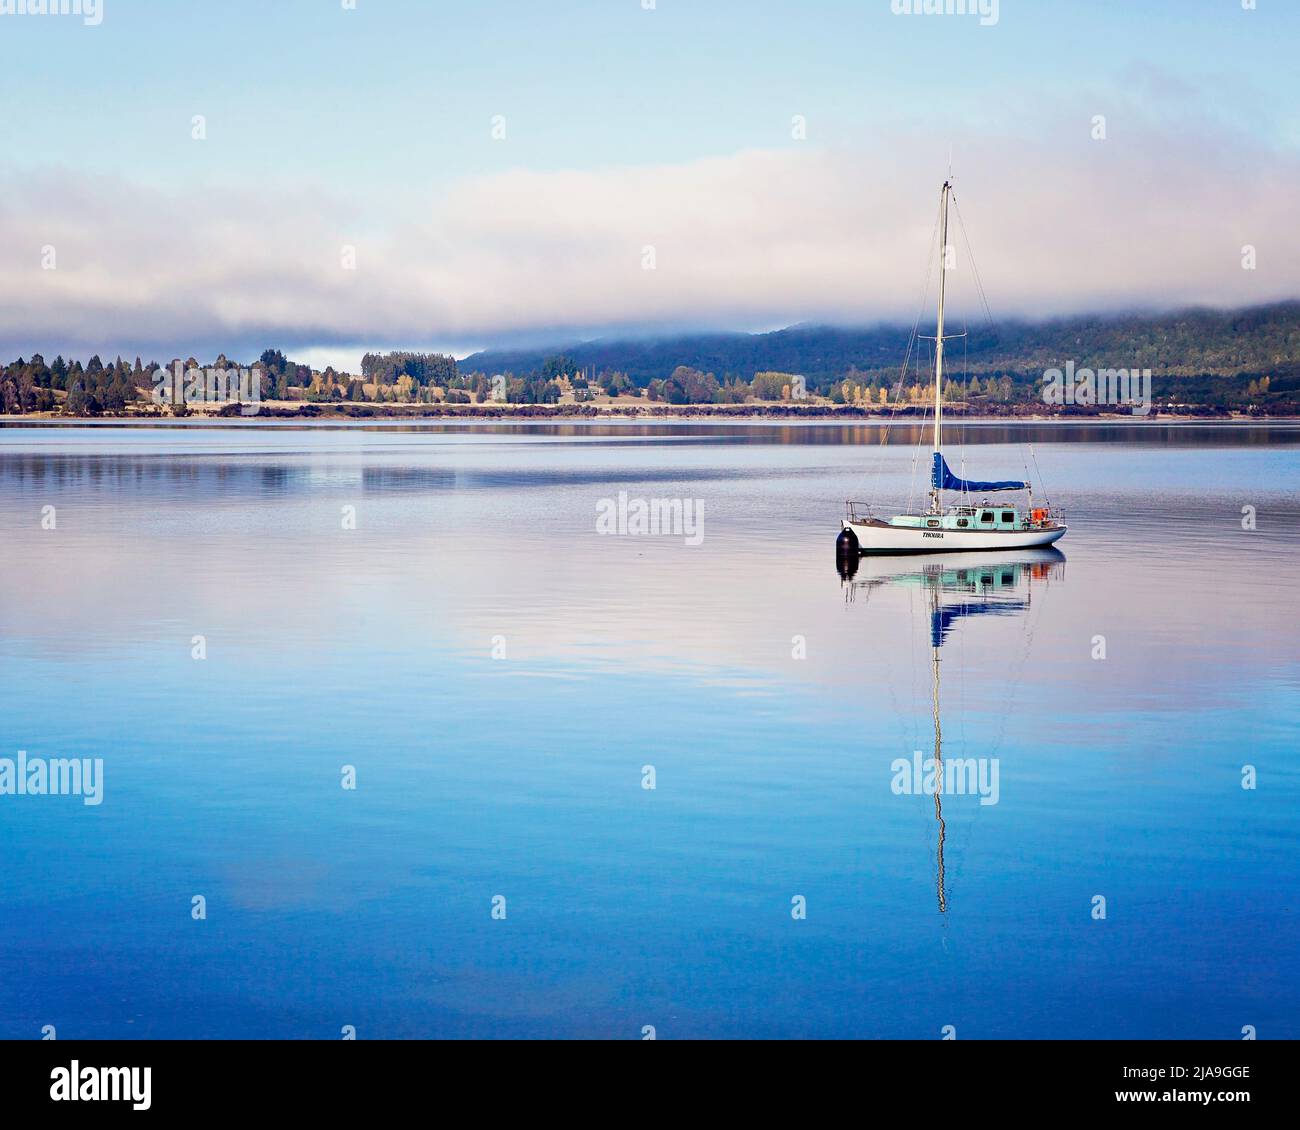 Neblige friedliche Szene am frühen Morgen mit einem Segelboot mit Spiegelung im stillen Wasser am Lake Te Anau, Neuseeland-Südinsel. Stockfoto